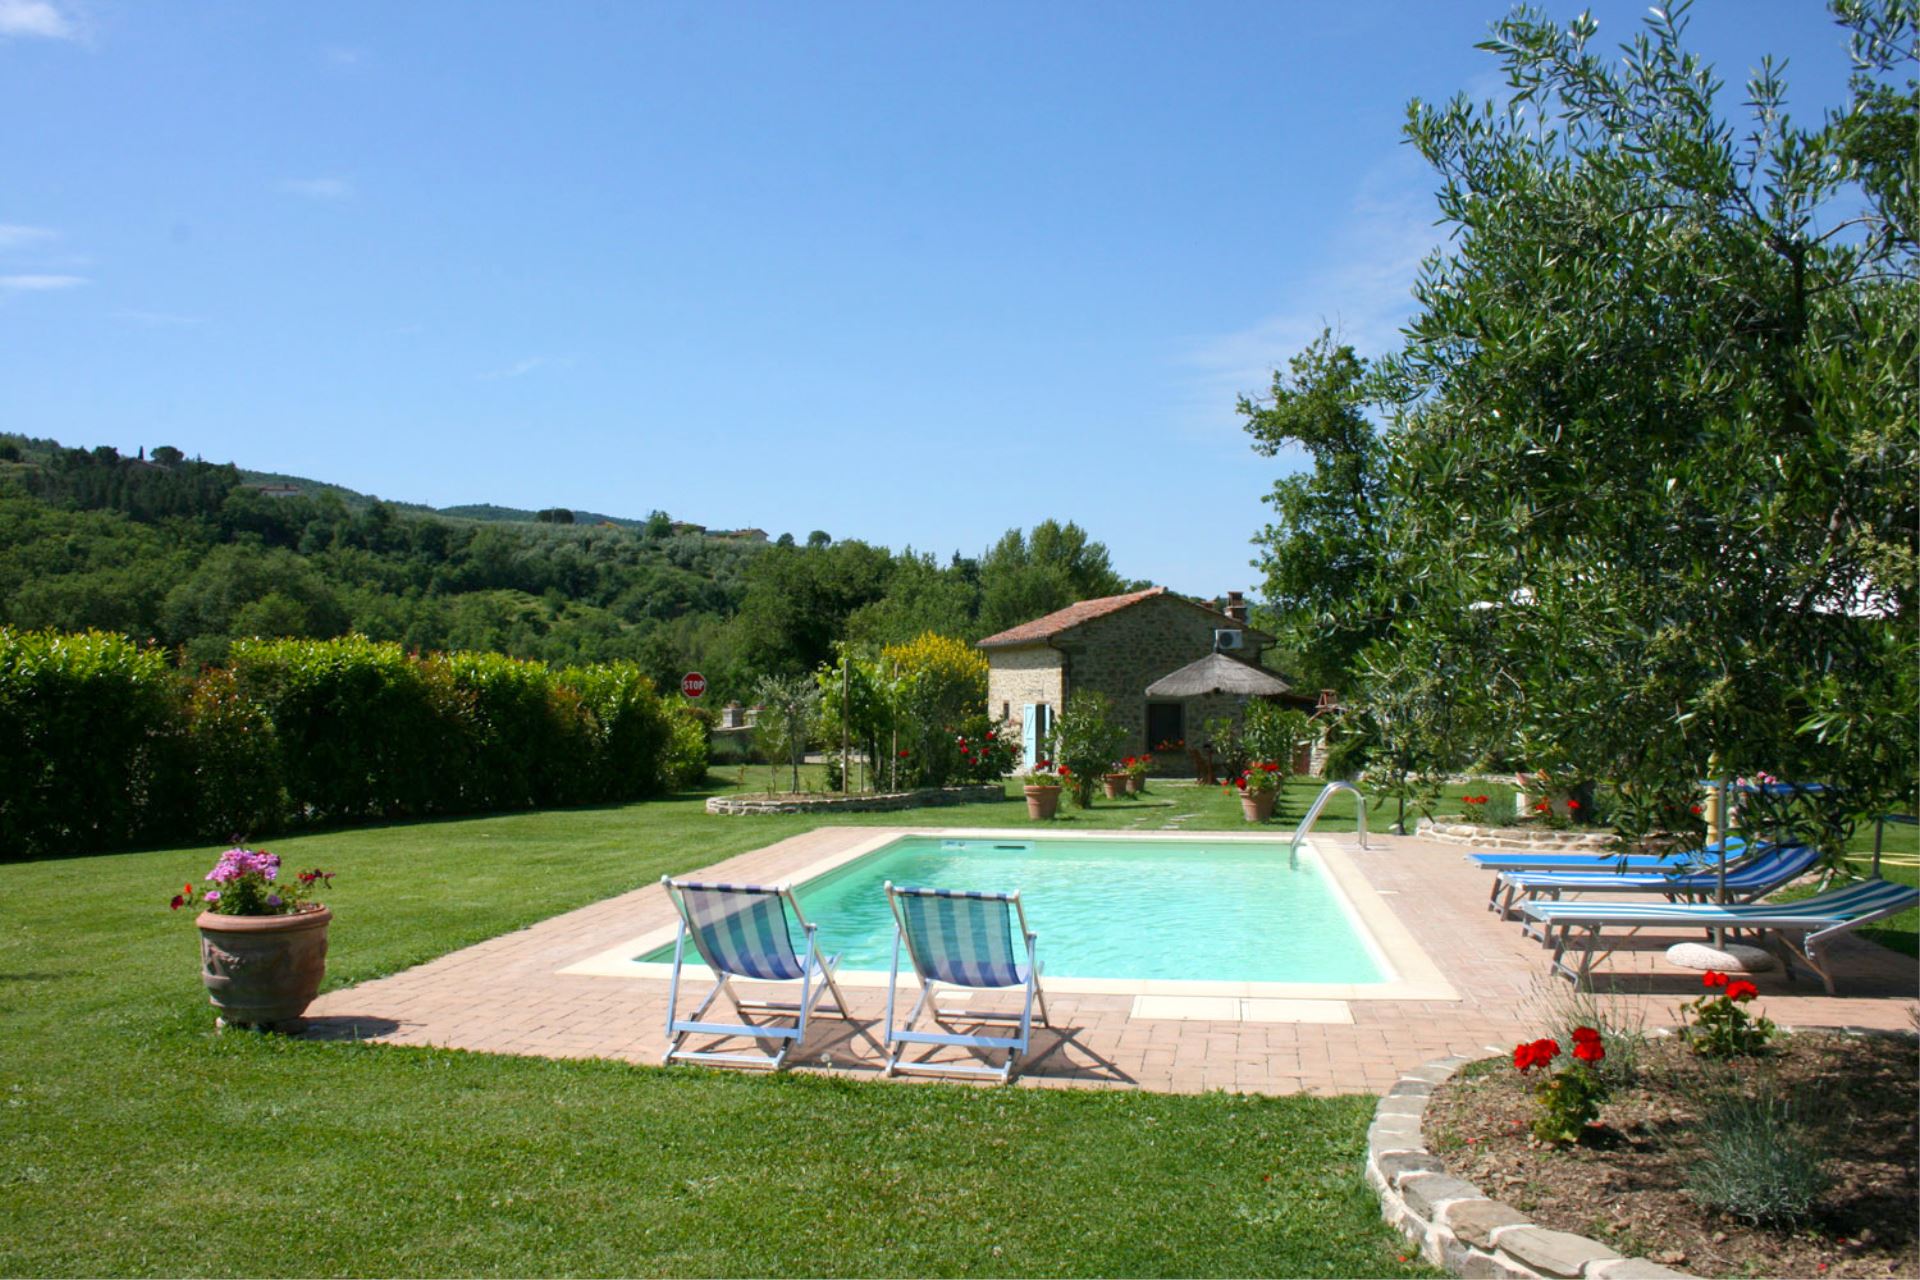 292_Casa Pino vakantiehuis met prive zwembad Toscane Arezzo11